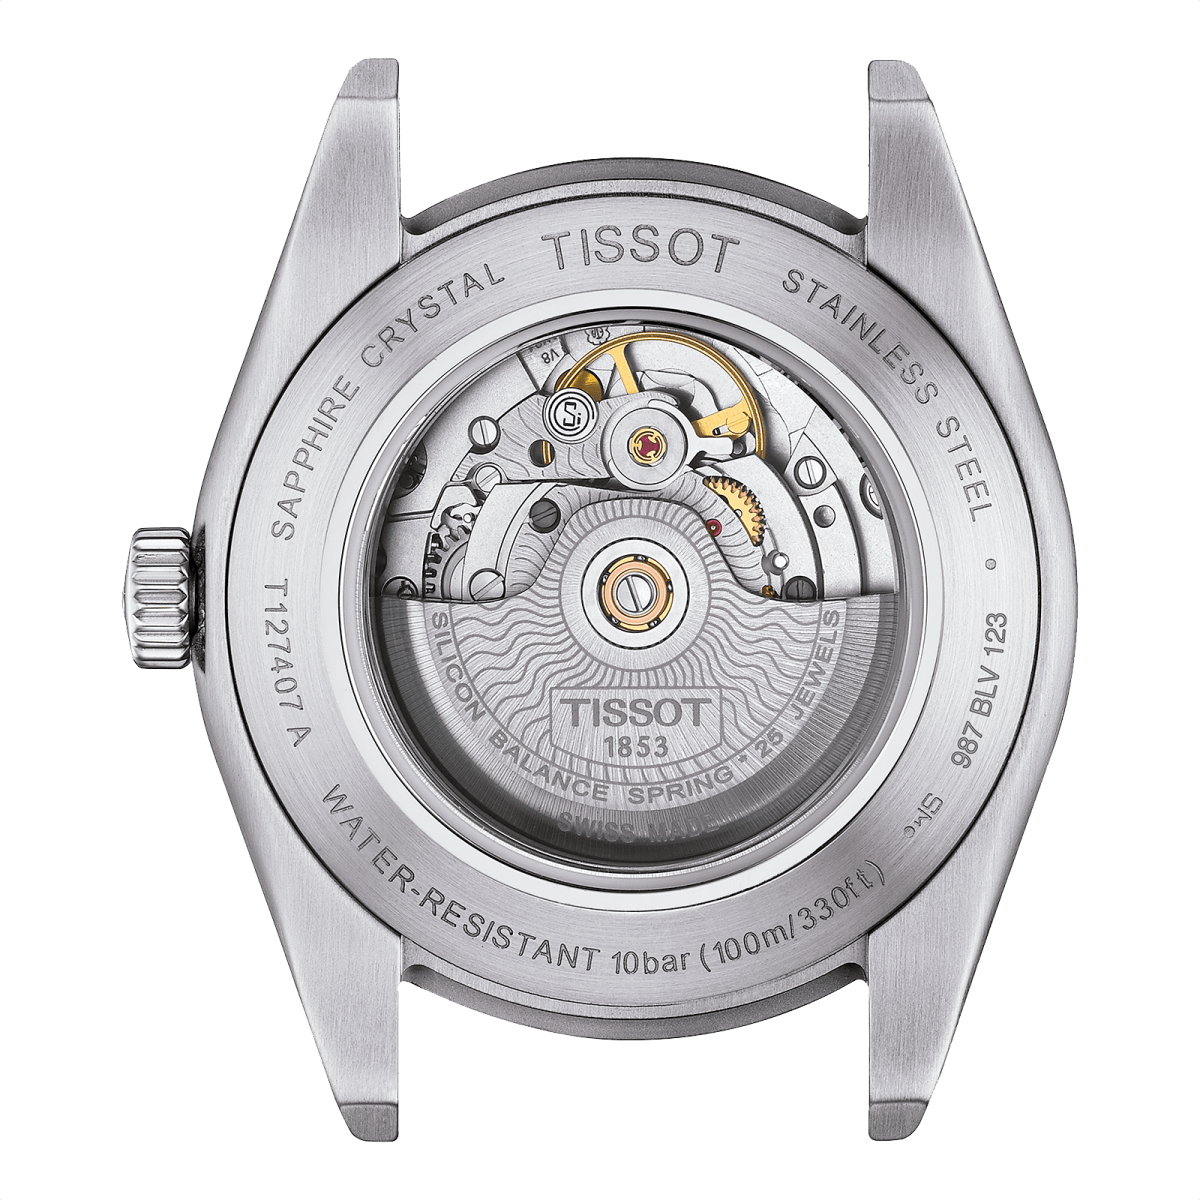 Relojes Tissot Gentleman, una colección de relojes hombre